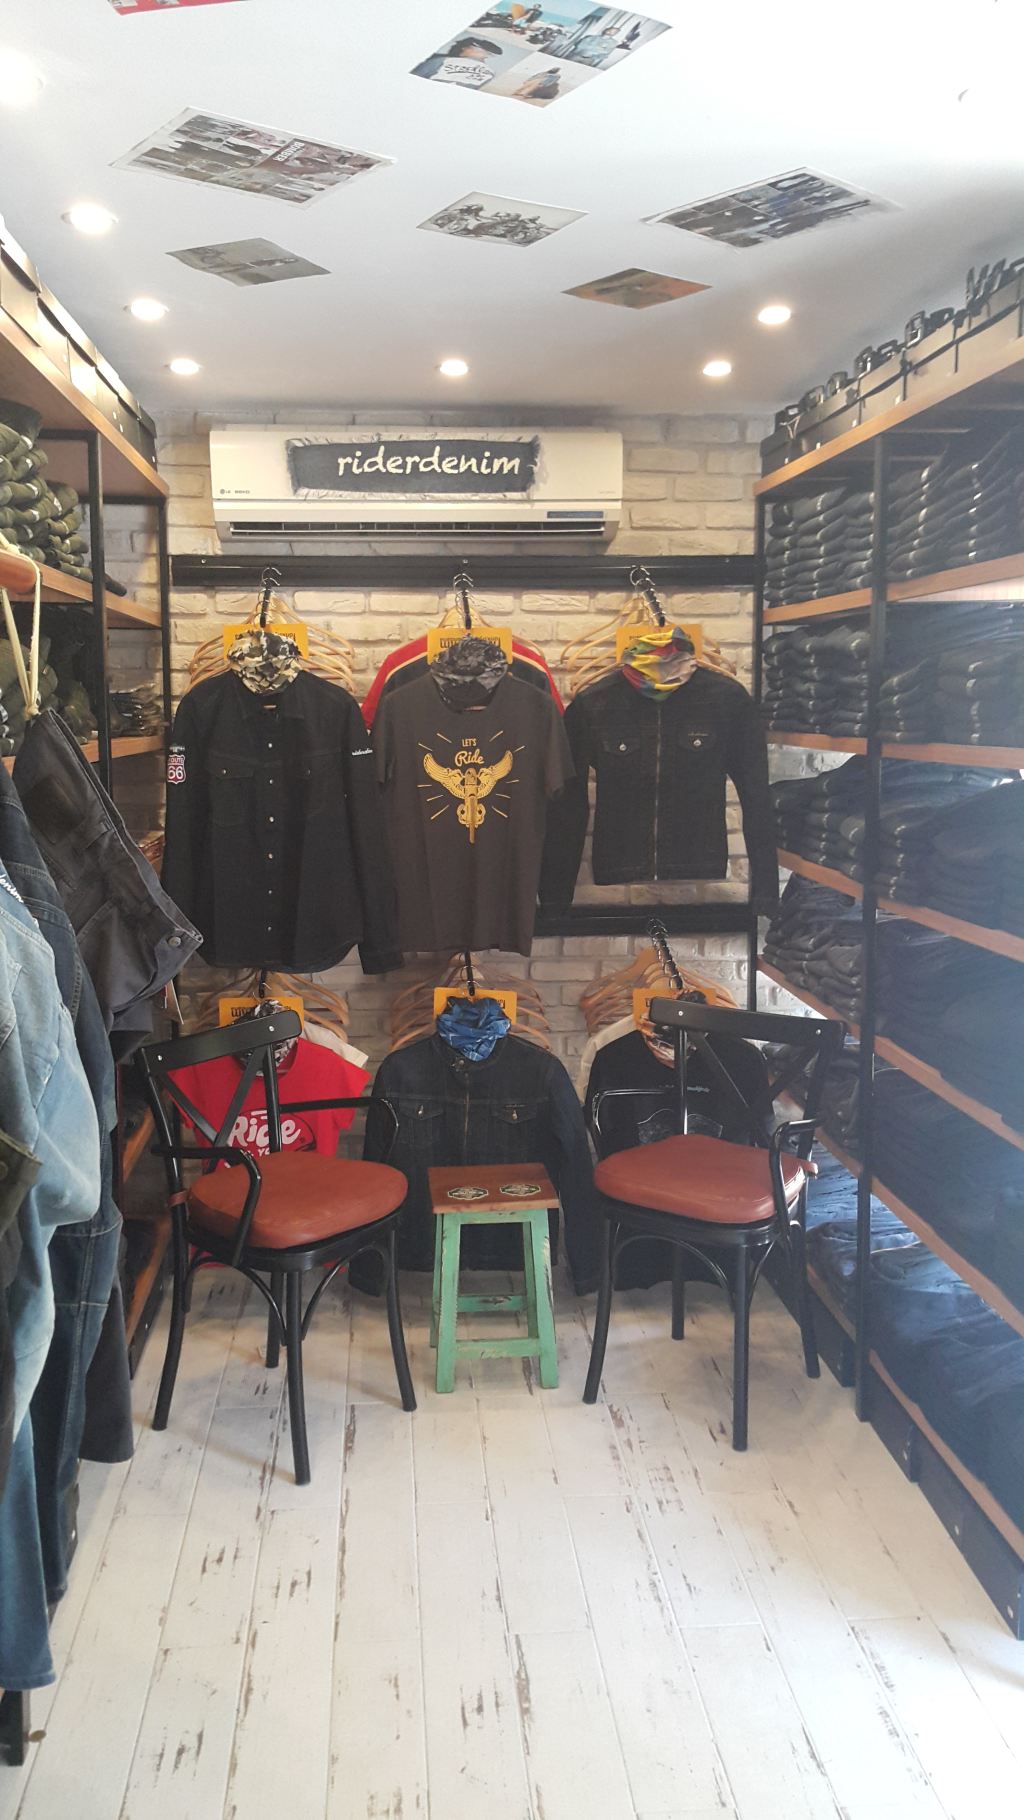 Riderdenim, İzmir’de Yeni Mağazası ile Hizmet Vermeye Başladı! 2. İçerik Fotoğrafı